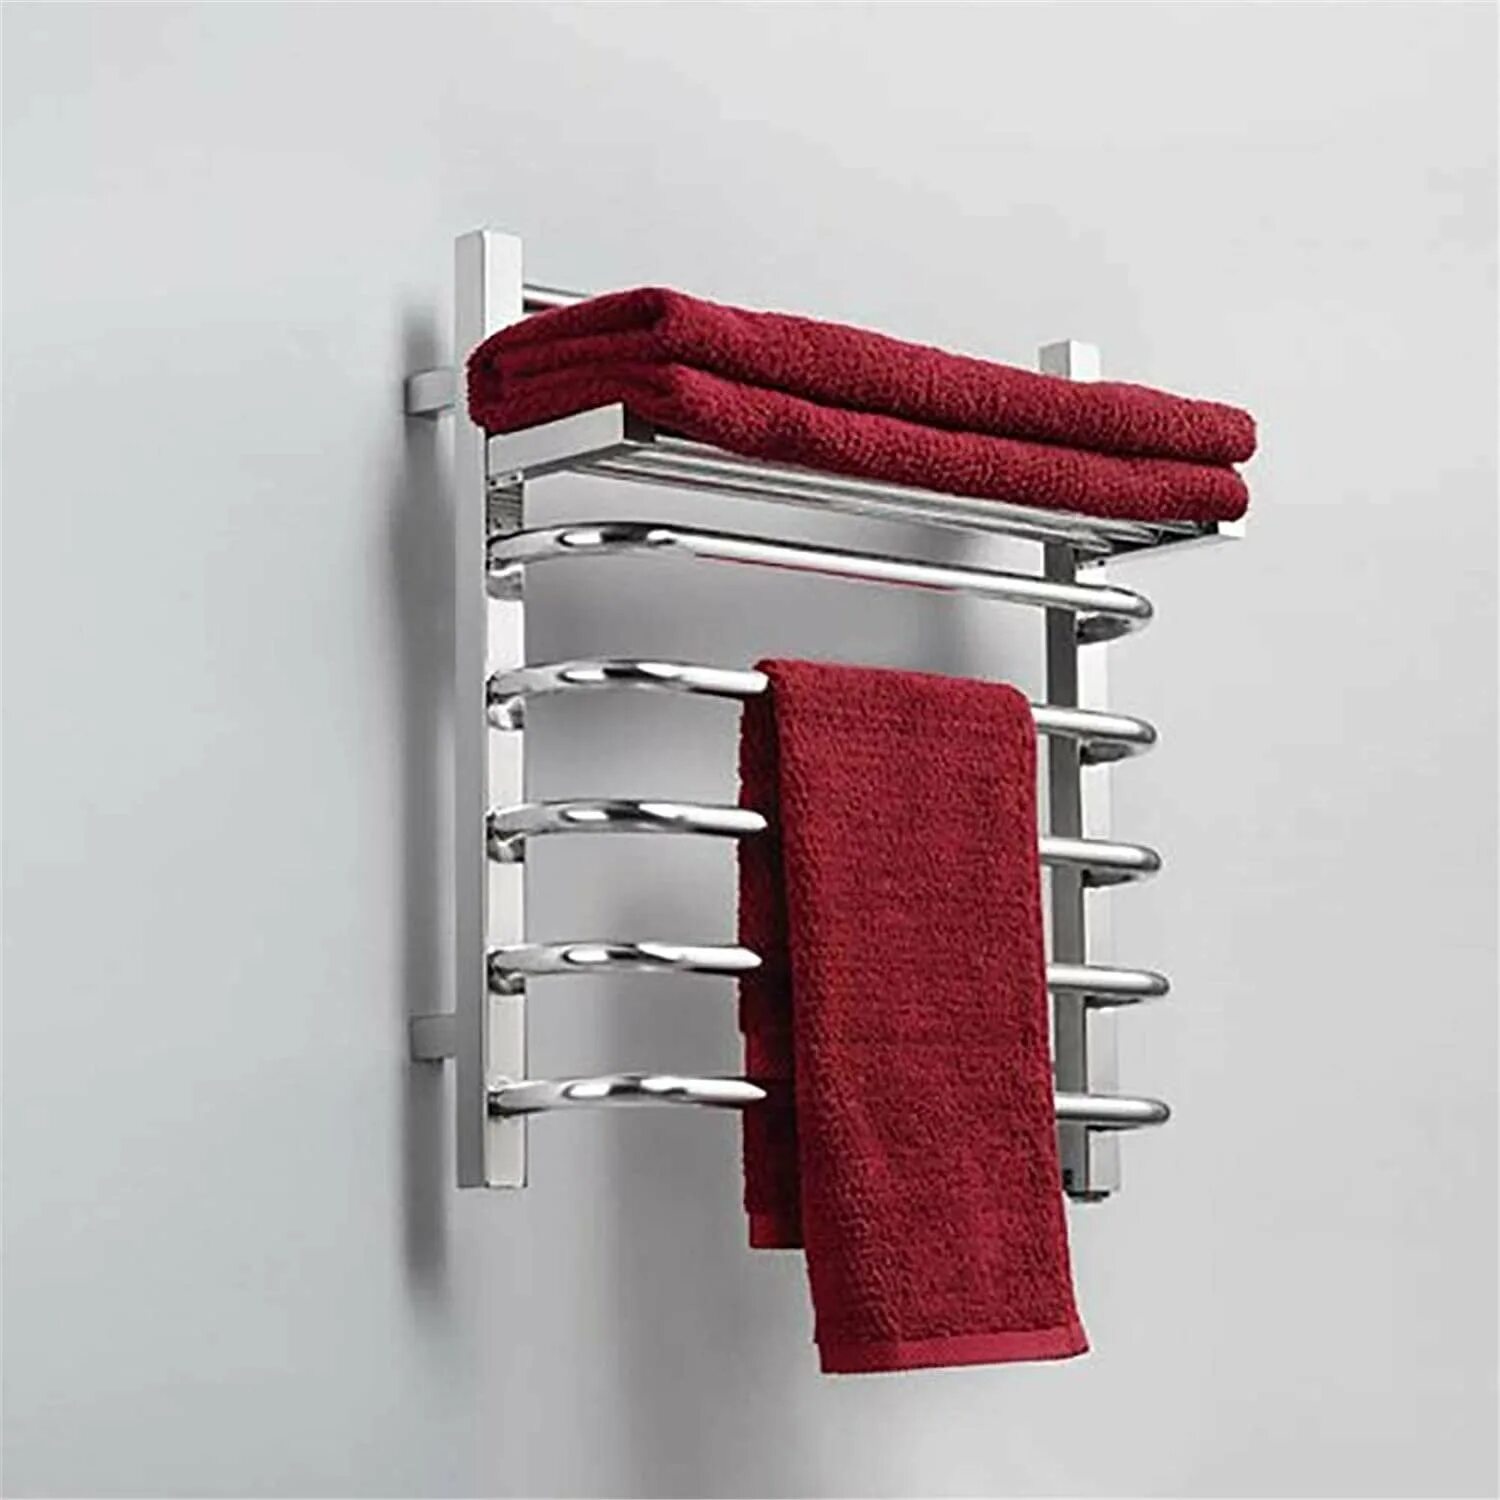 Сушилка Towel Warmer. Сушилка для белья Stainless Steel Towel Rack. Полотенца сушители 50/80. Сушилка для полотенец в ванную. Сушилка для полотенец настенная